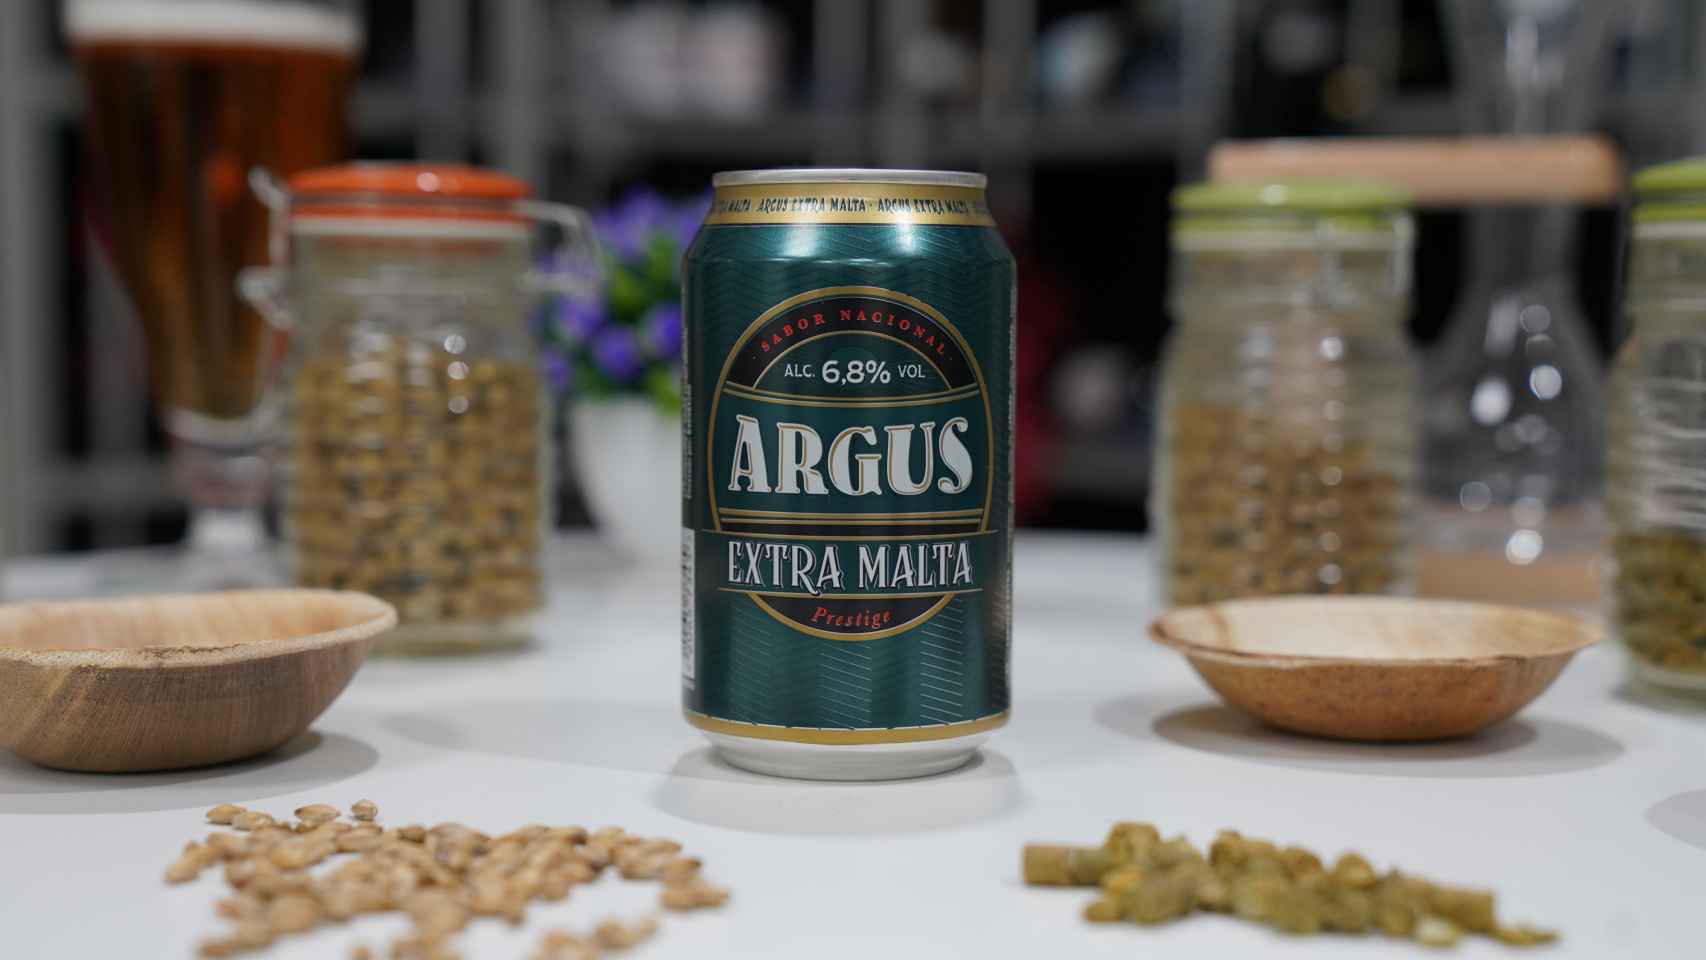 La lata de cerveza de Argus con extra de malta, la marca blanca de Lidl.